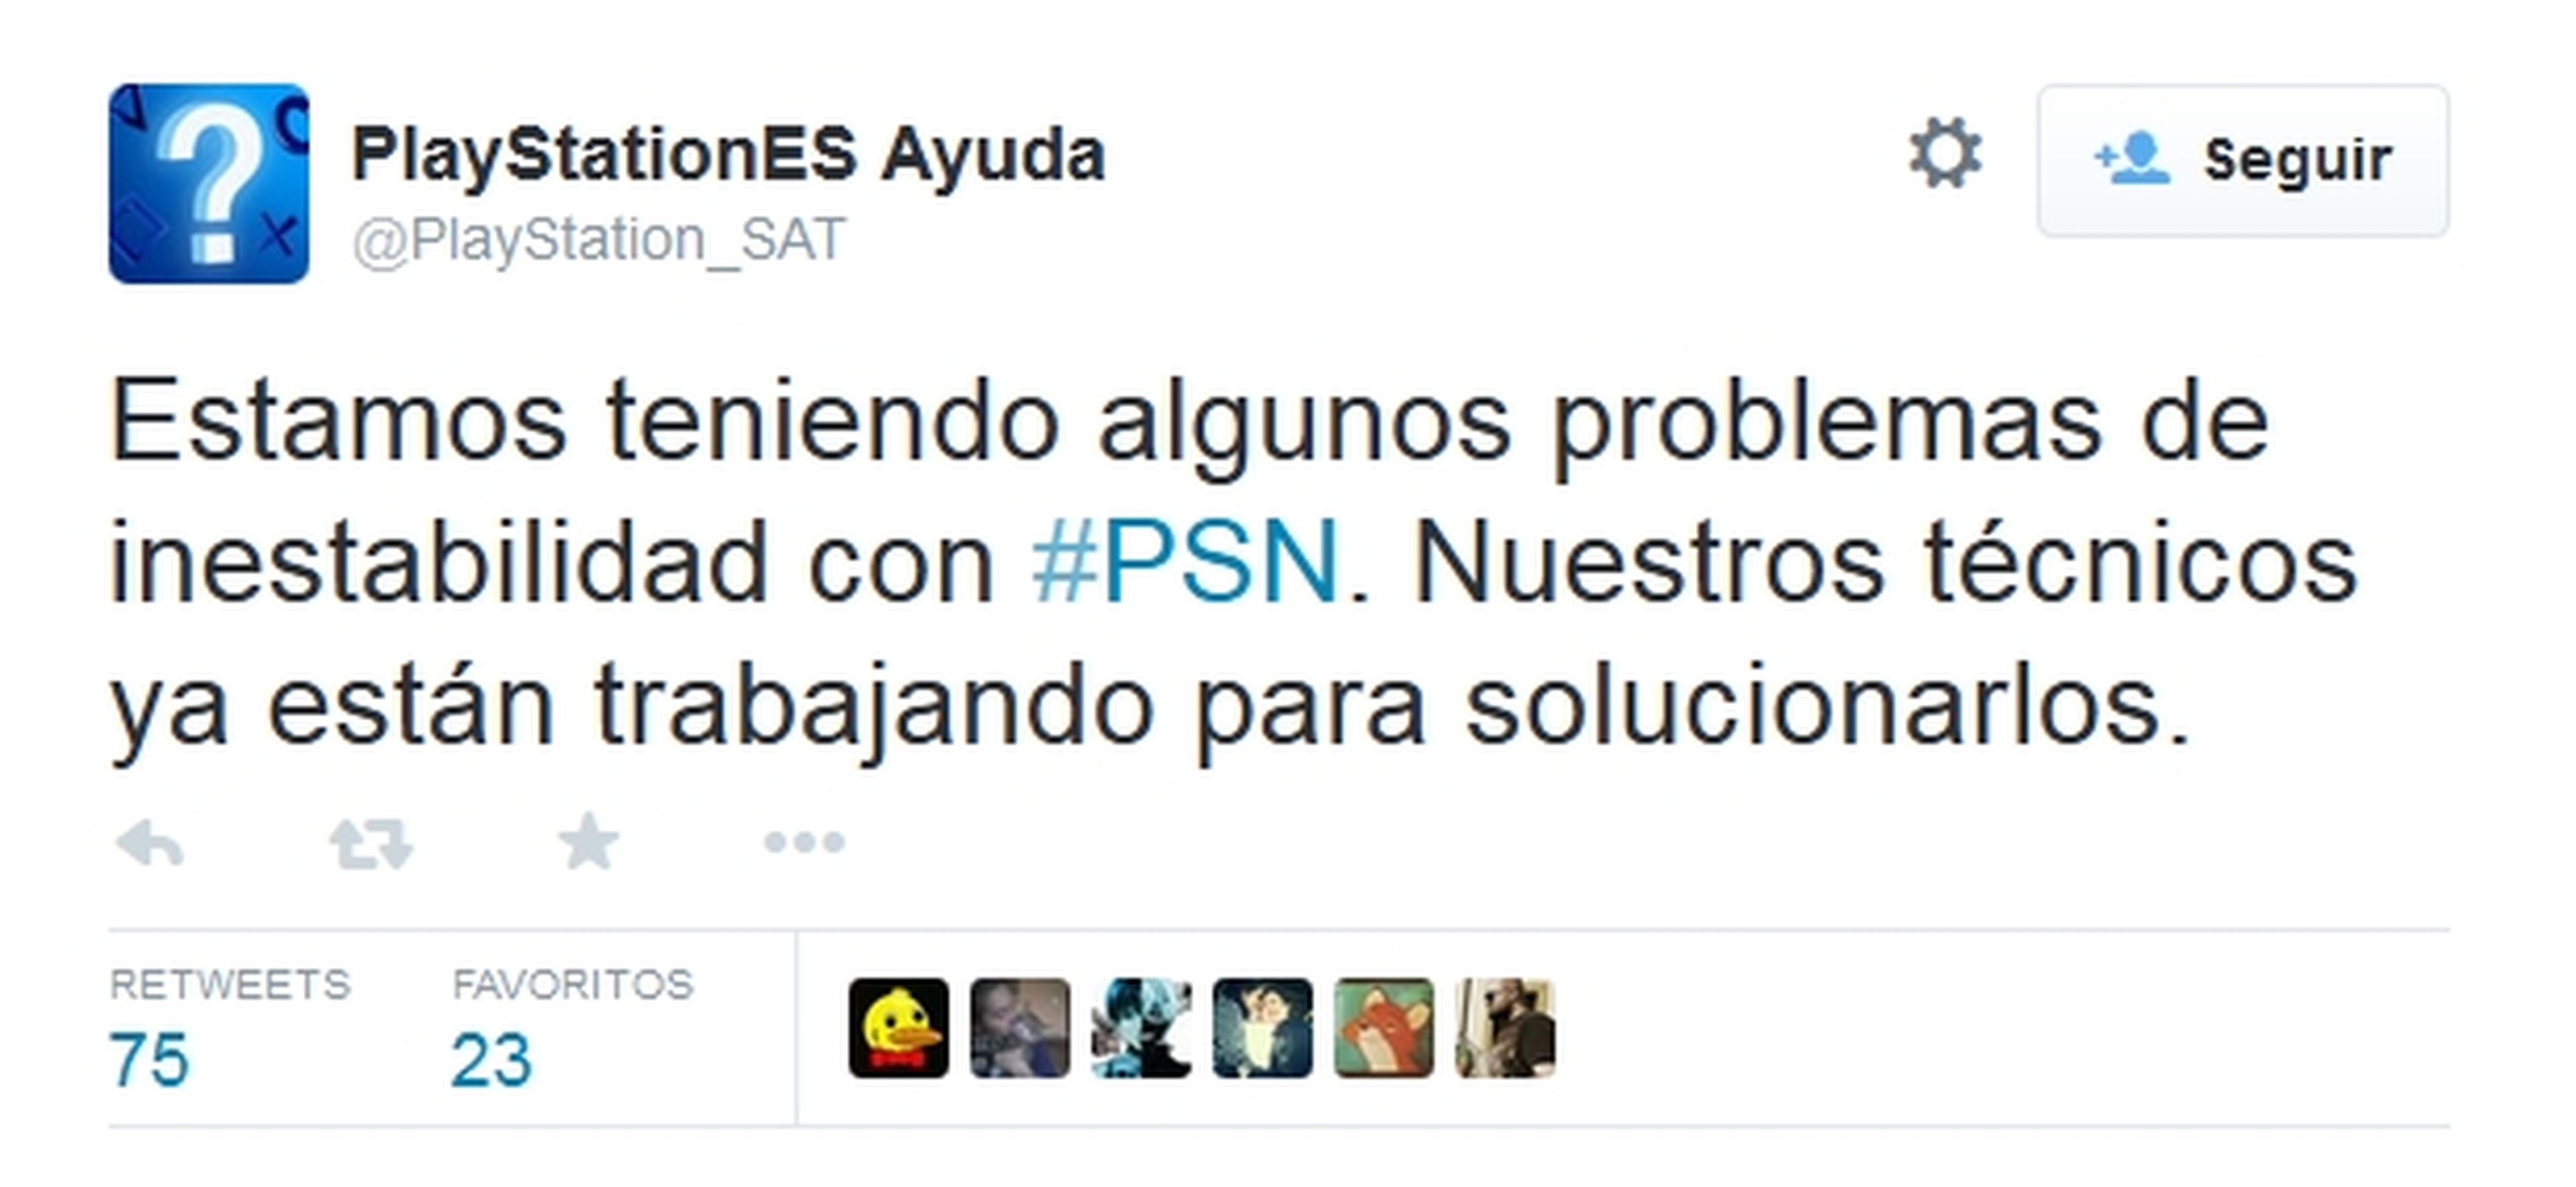 La nueva actualización de PS4 provoca problemas en PSN